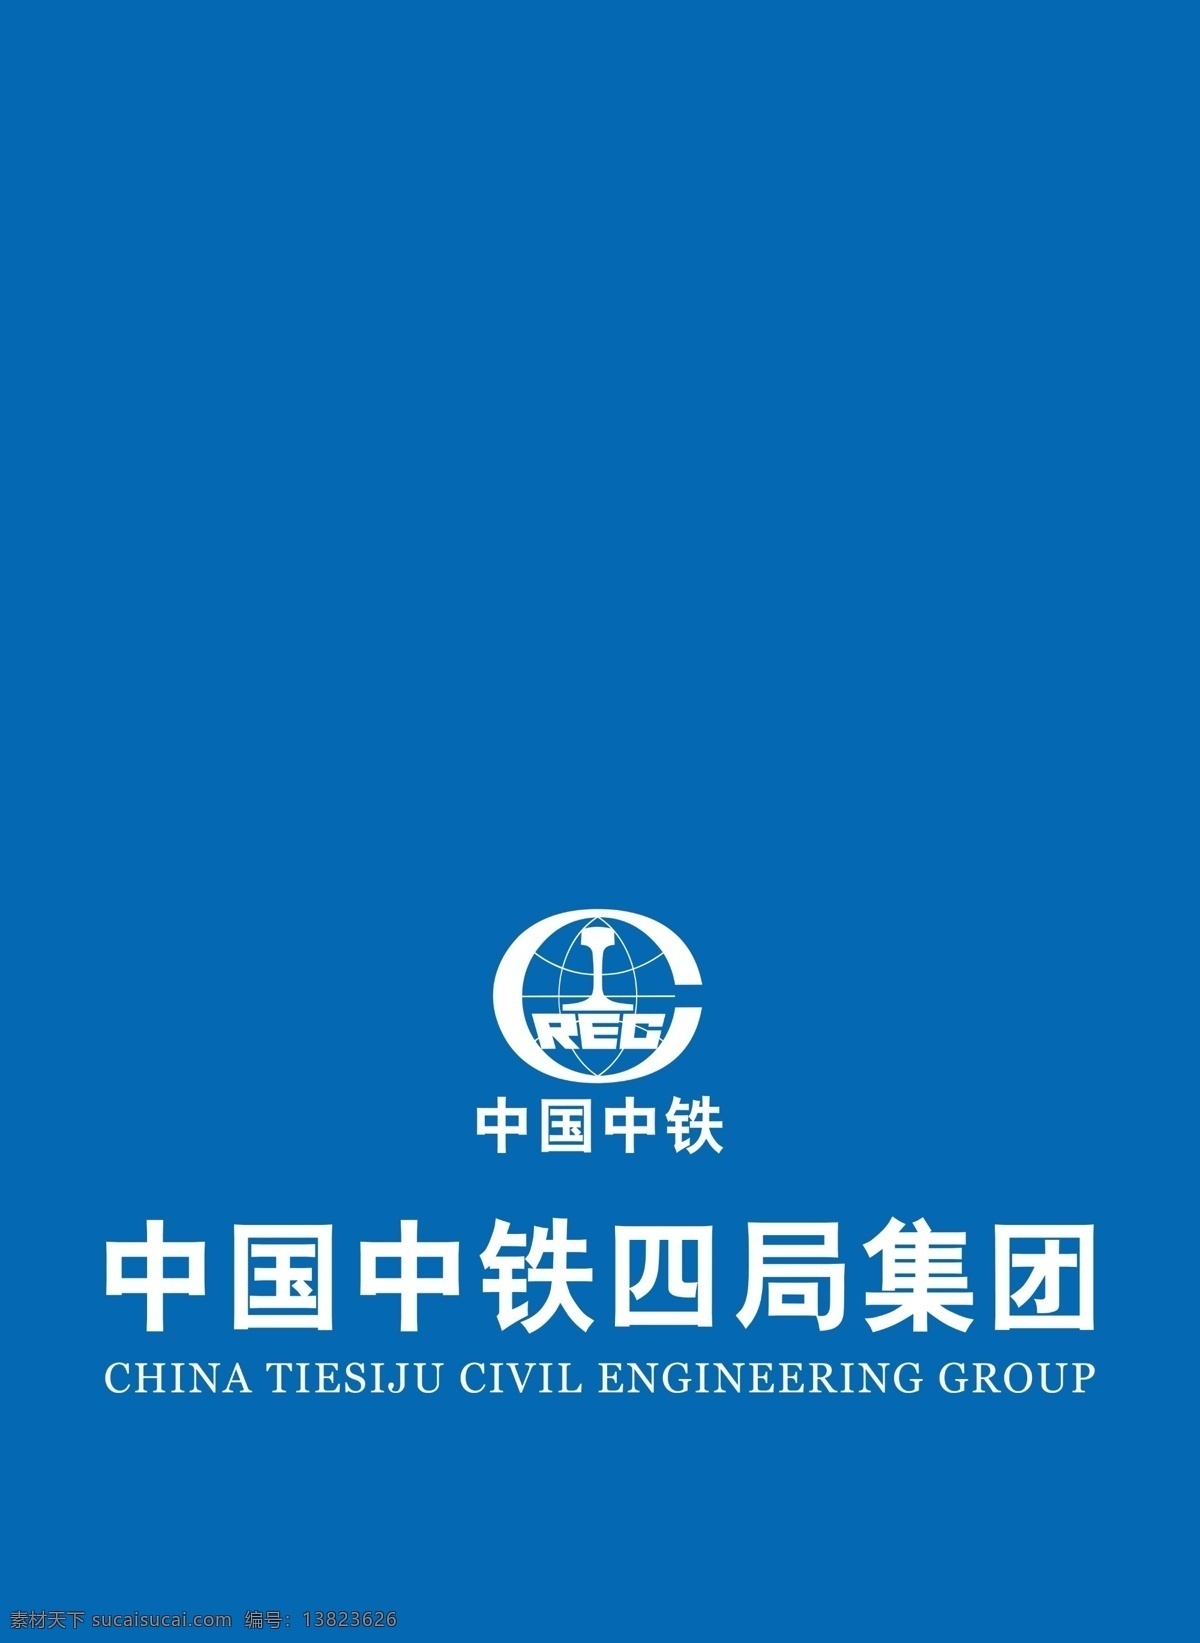 中国中铁标志 中 国 中铁 标志 图标 矢量图标 分层